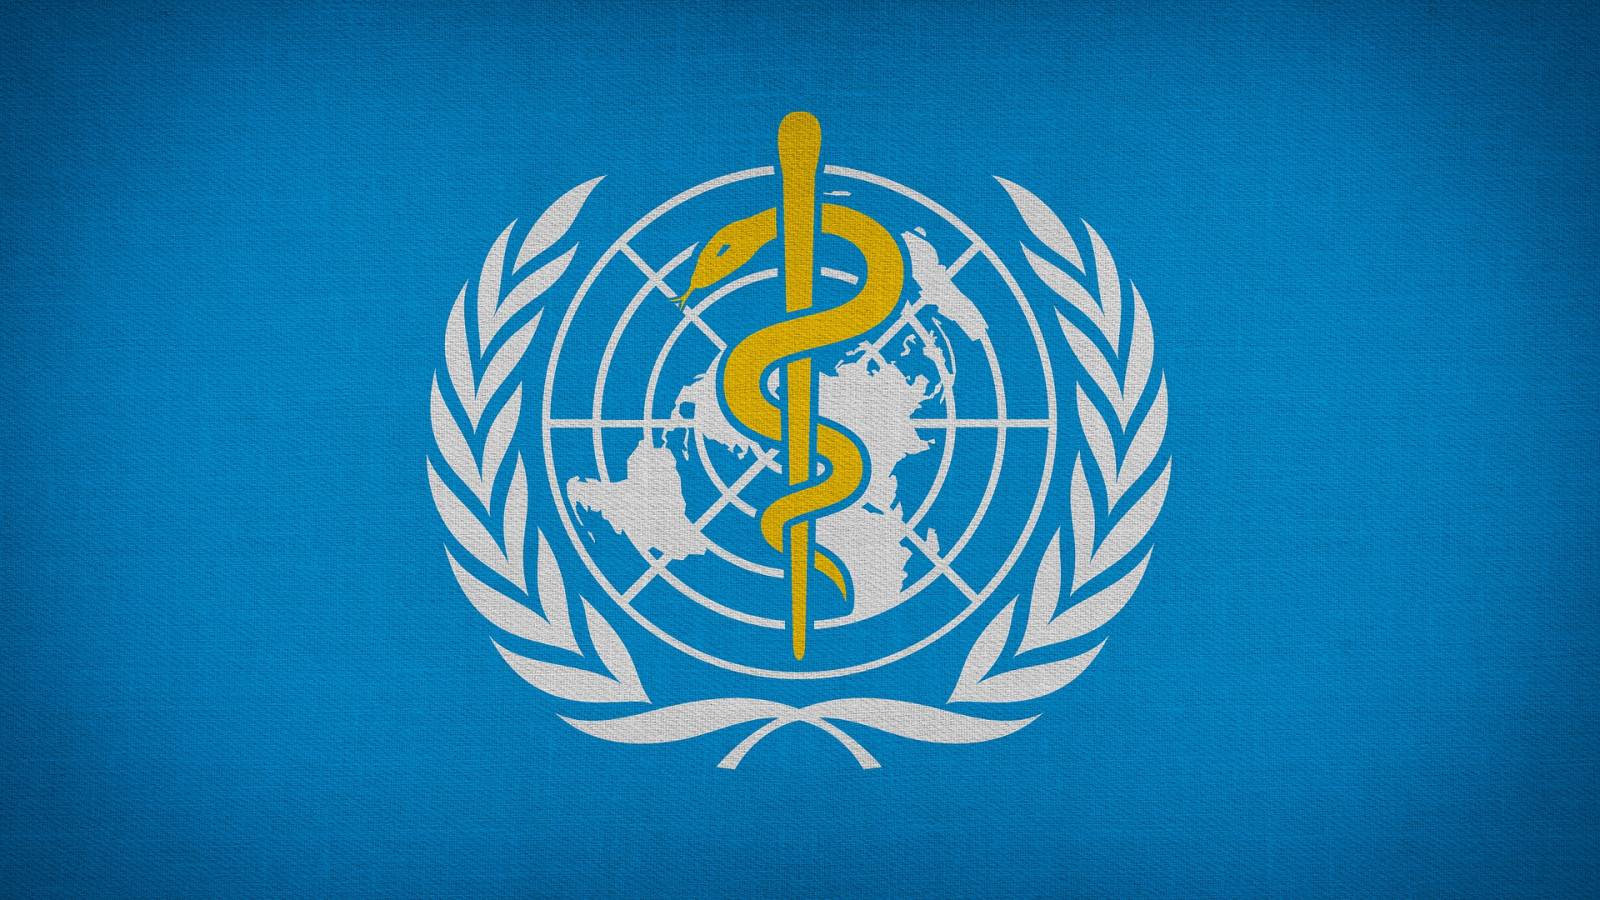 Die von der WHO geforderten Maßnahmen zur Lösung des besorgniserregenden globalen Problems des Zugangs zu medizinischen Dienstleistungen